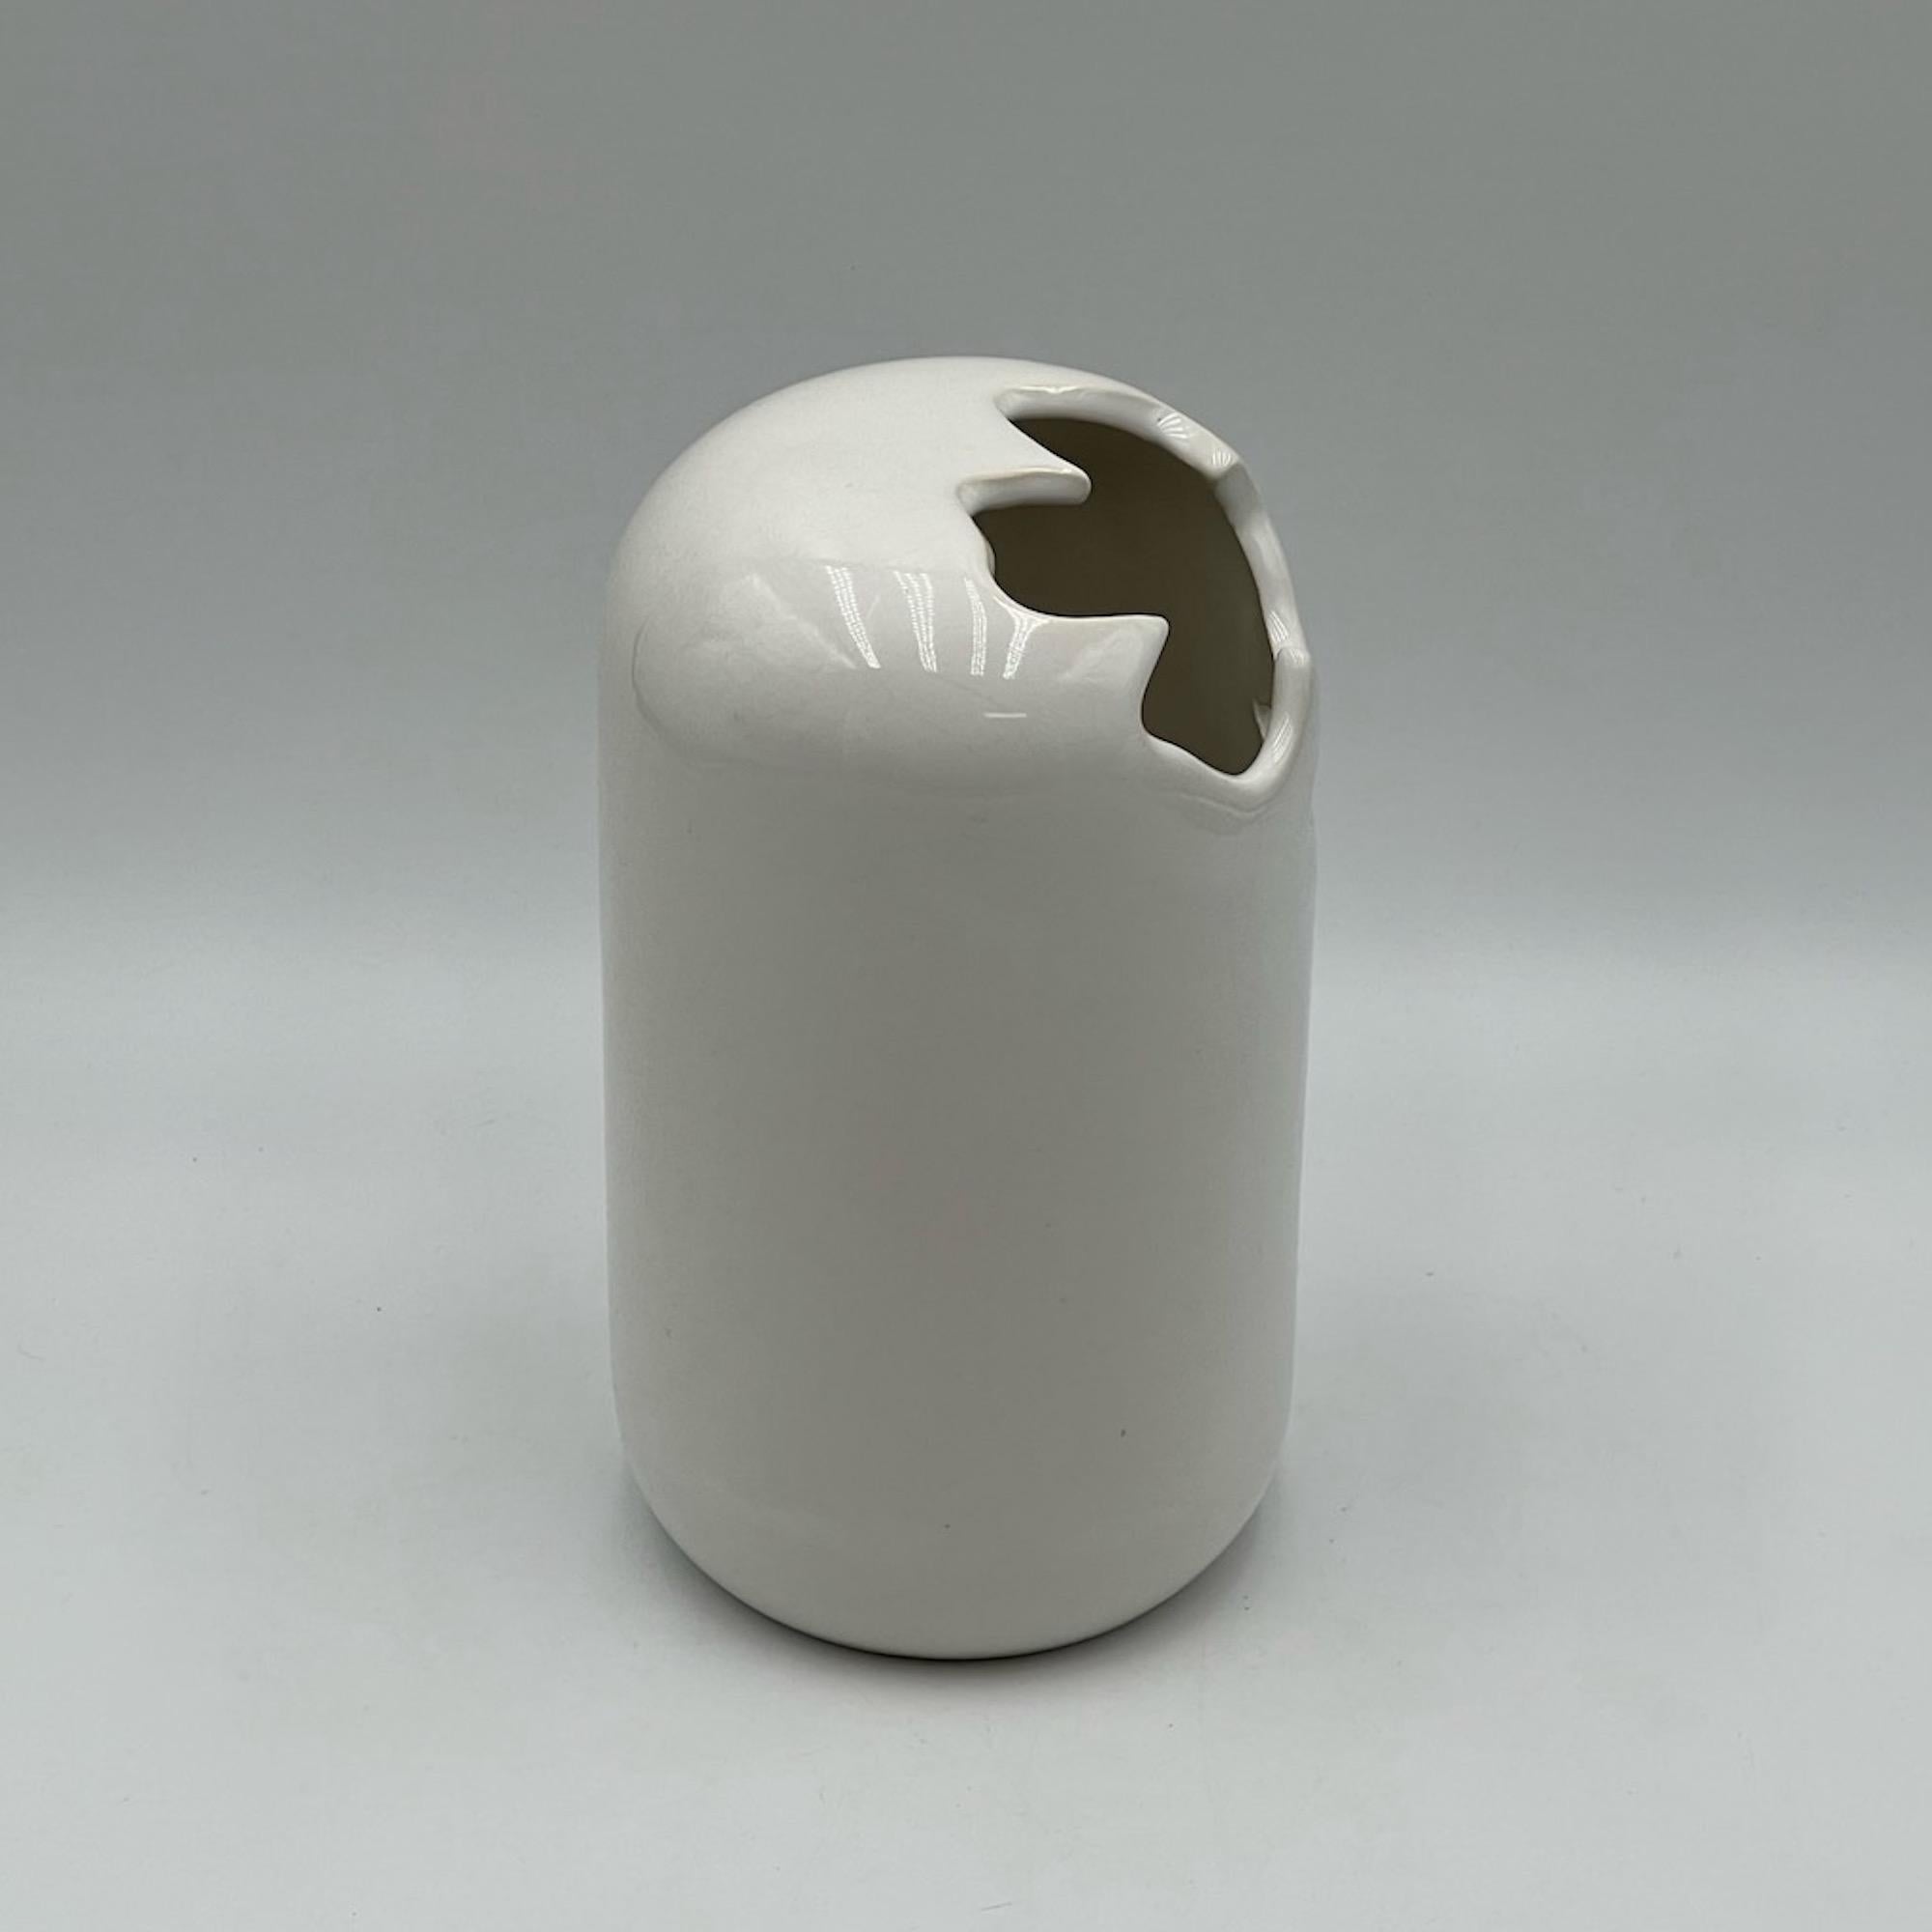 Magnifique vase en céramique fabriqué par Gabbianelli dans les années 60.

Ce bol excentrique de la 